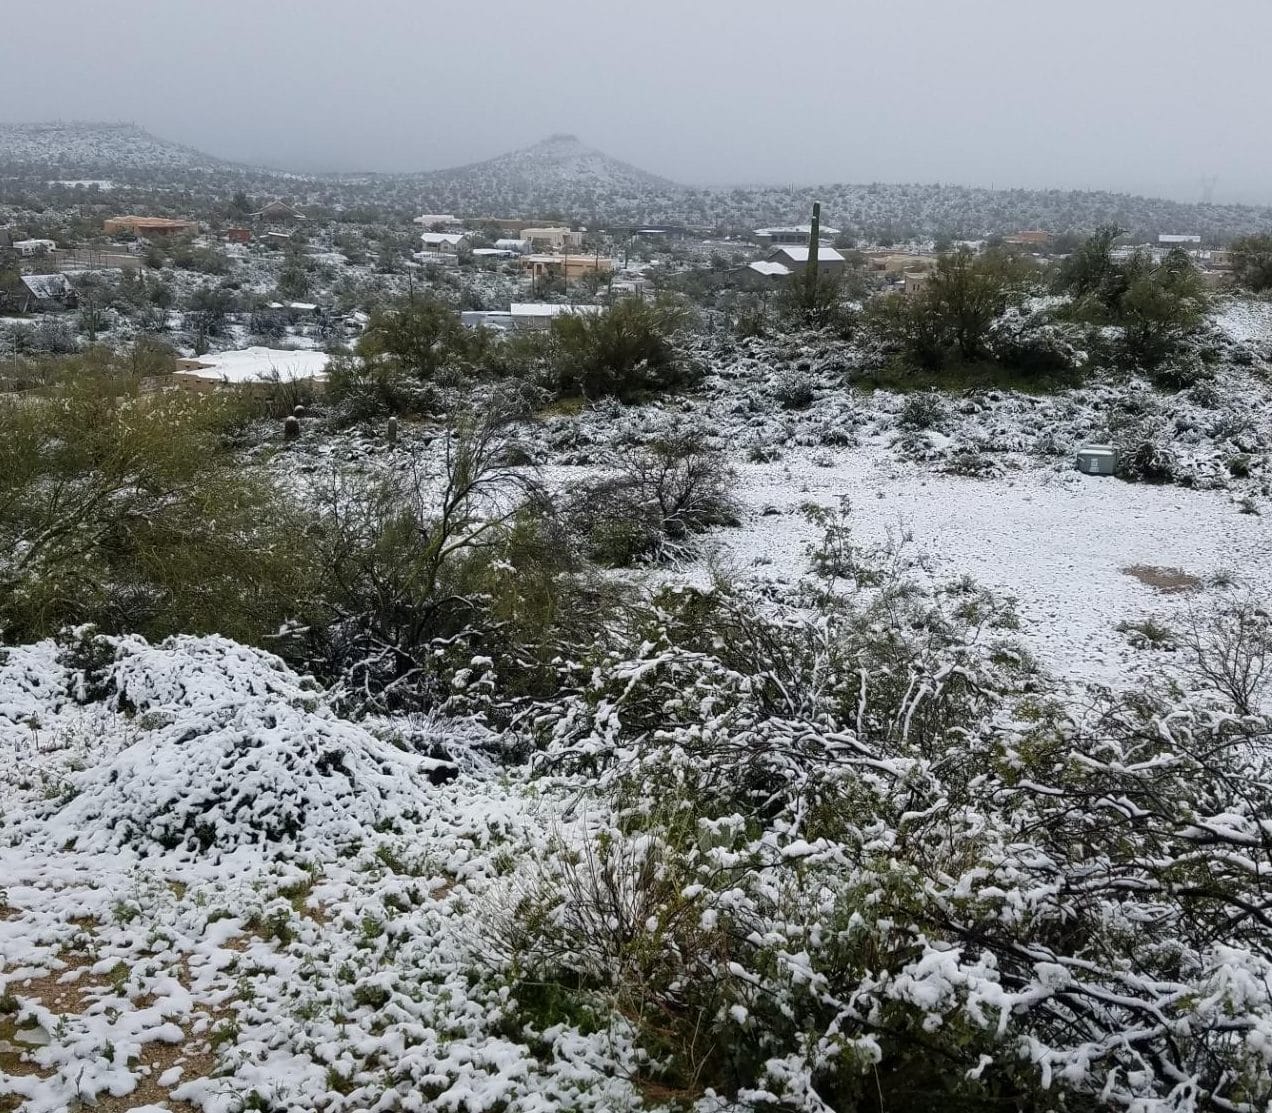 Unexpected snow in Arizona